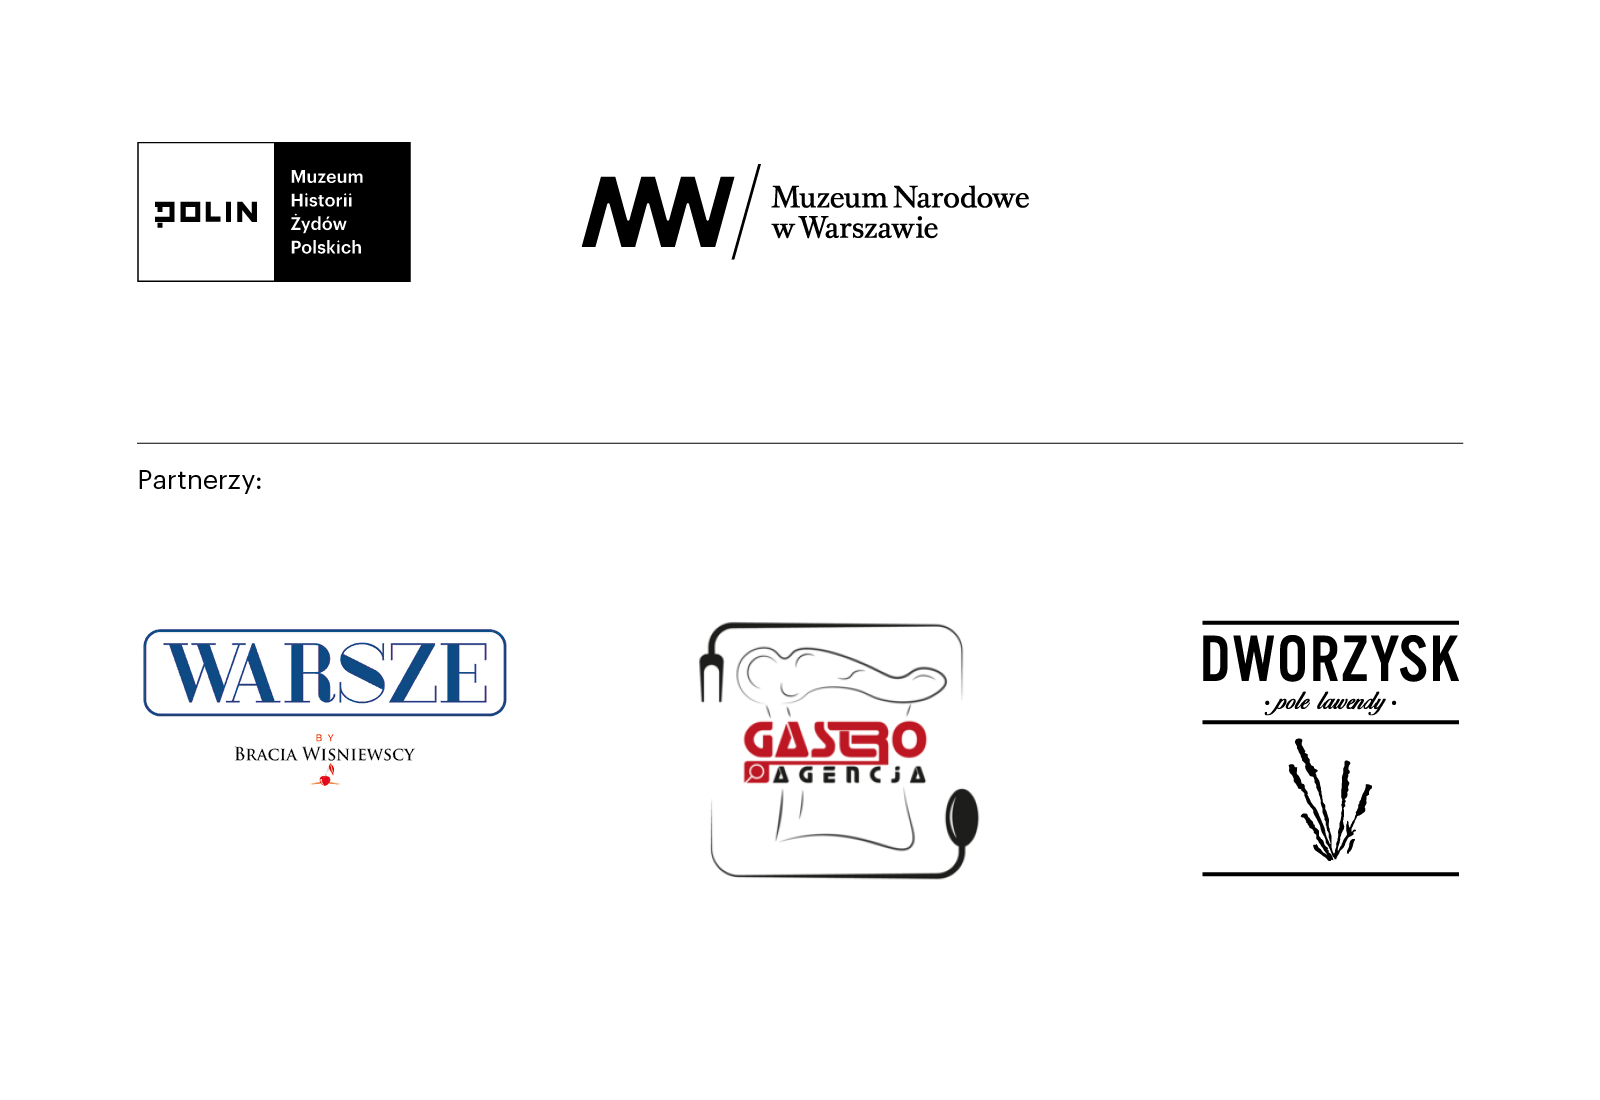 Logotypy Muzeum POLIN, Muzeum Narodowego w Warszawie, restauracji Warsze, Gastroagencji, Dworzyska - pola lawendy